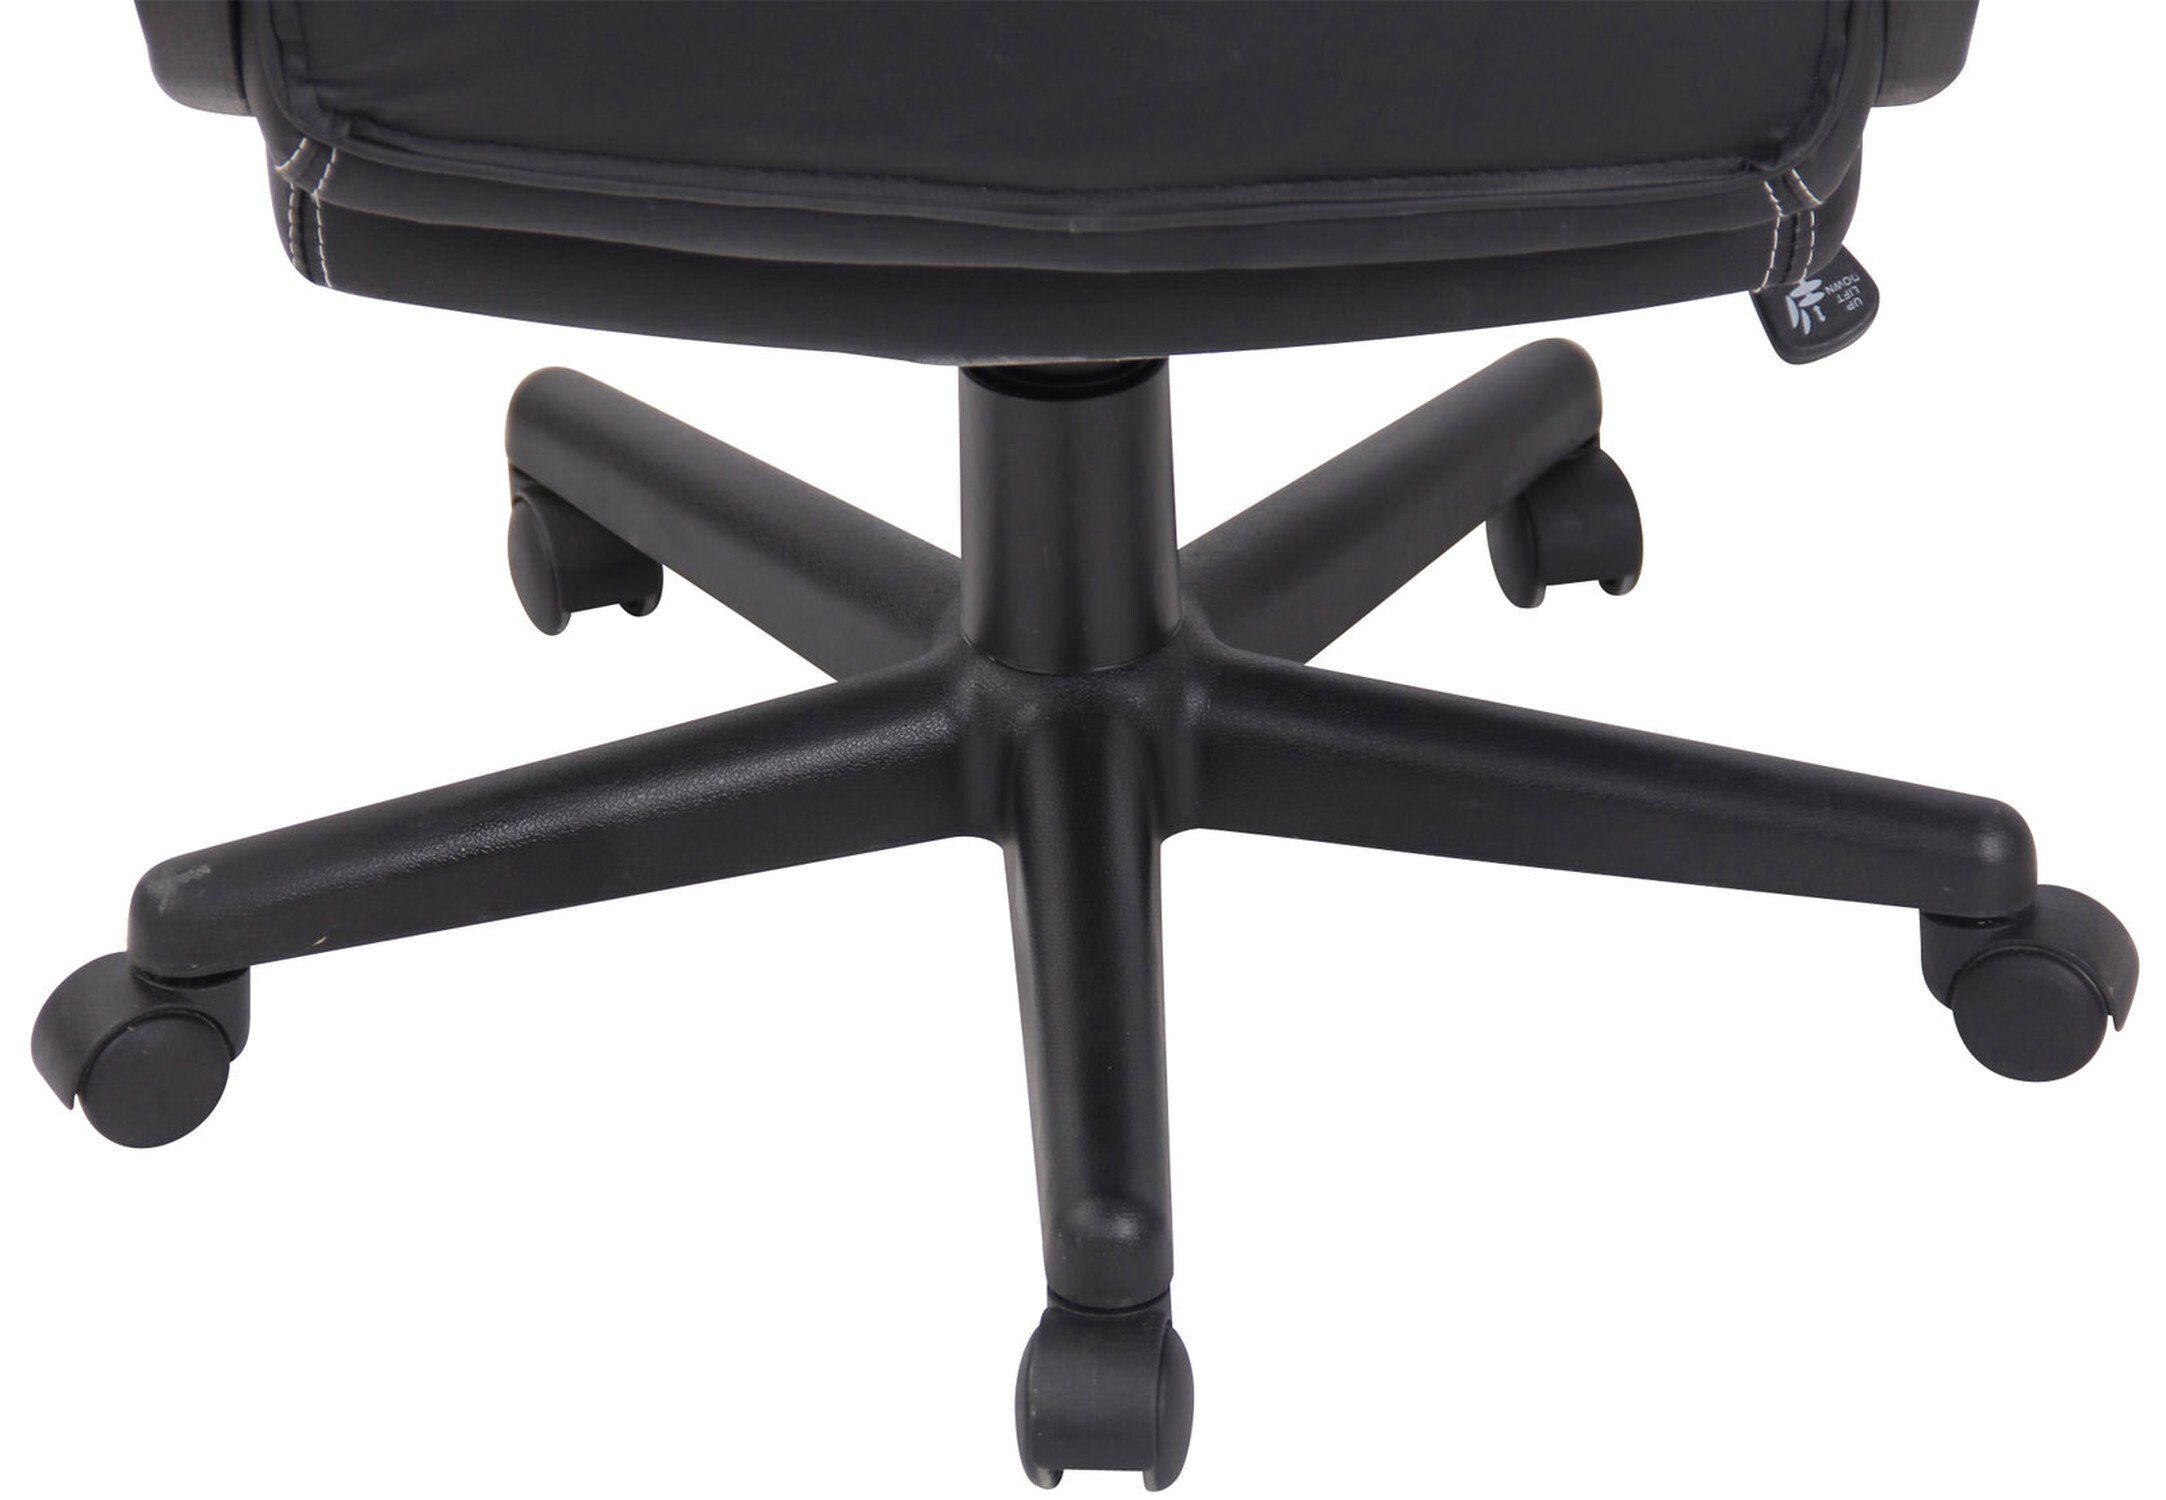 Chefsessel), und mit 360° Racingstuhl, Sitzfläche: Gaming-Stuhl drehbar schwarz Kunstleder - - TPFLiving Gamingstuhl, Gestell: höhenverstellbar Rückenlehne (Schreibtischstuhl, First bequemer schwarz Drehstuhl, Kunststoff